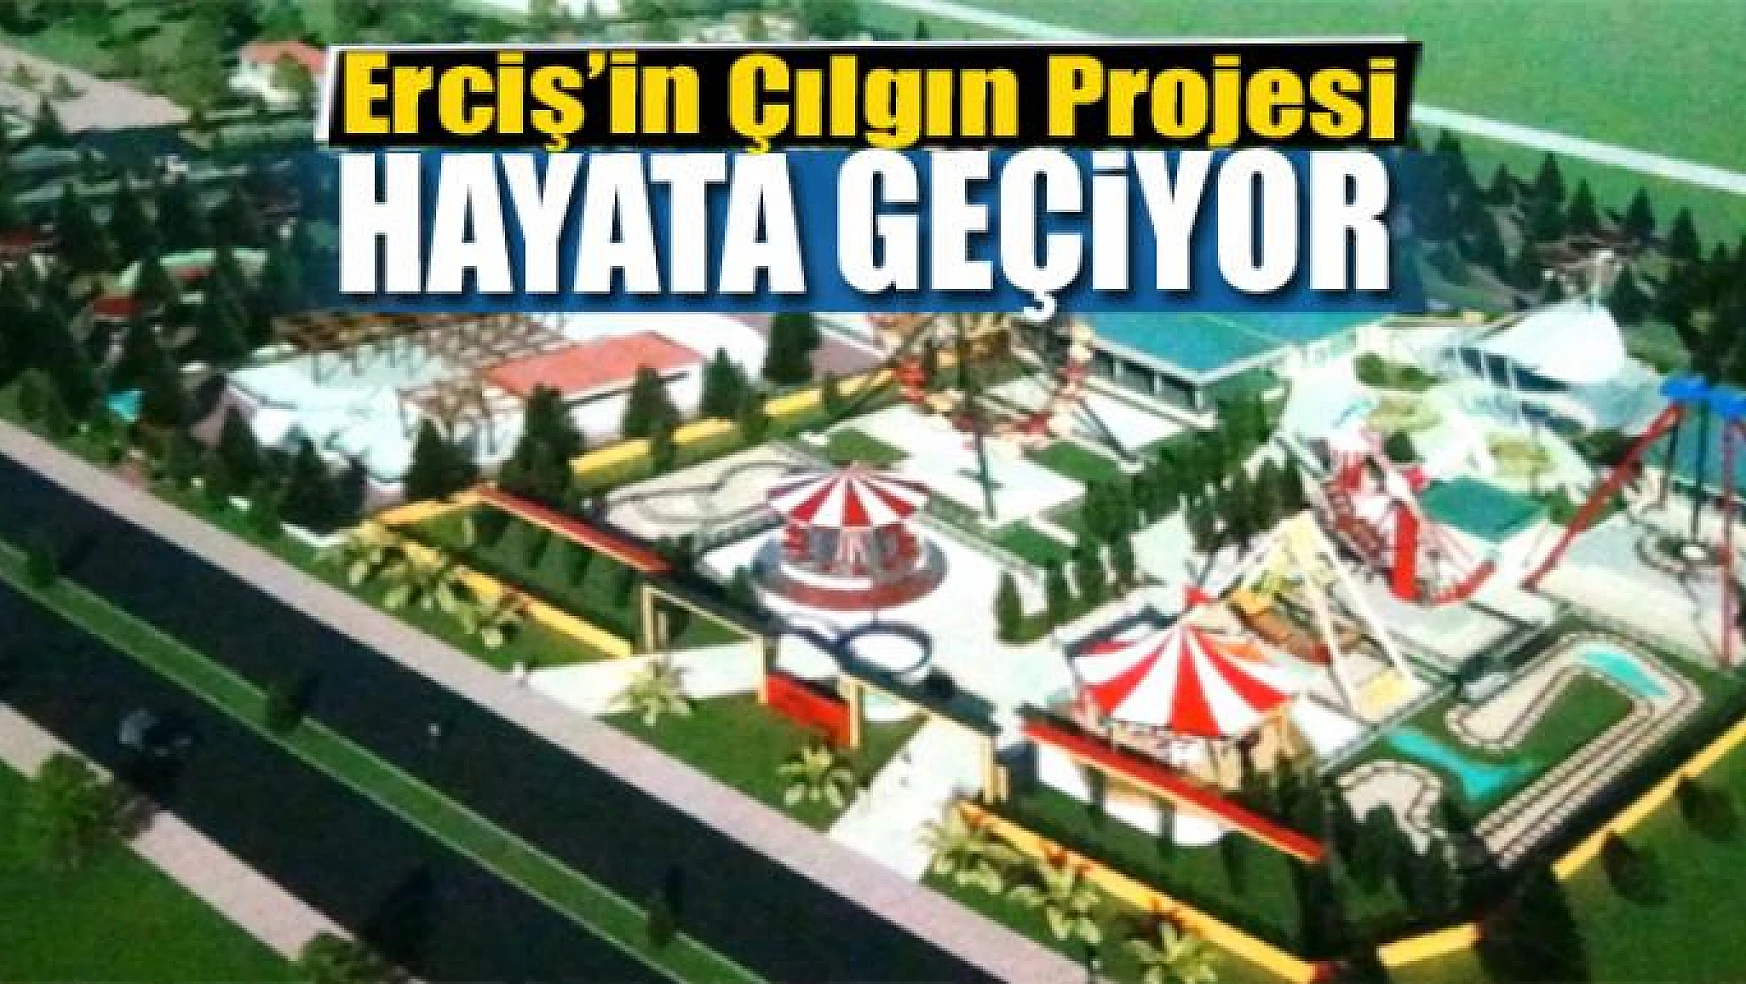 Erciş'in Çılgın Projesi Hayata Geçiyor